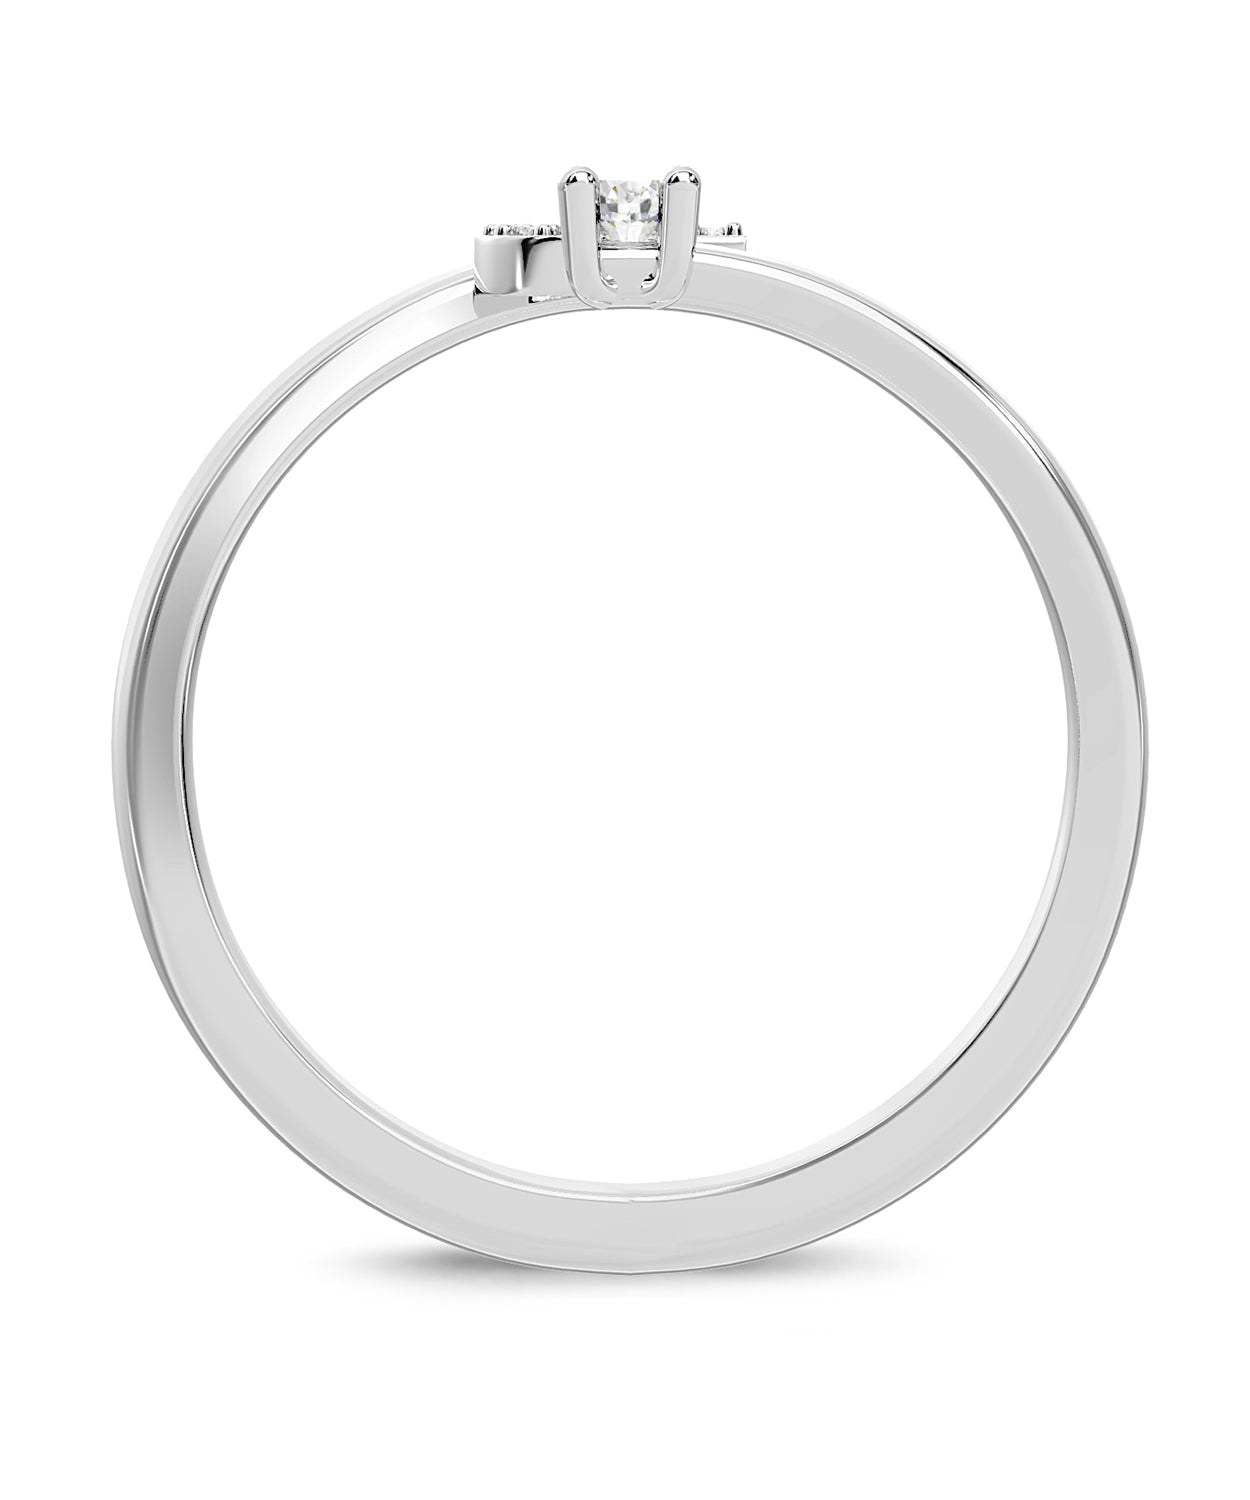 ESEMCO Diamond 18k White Gold Letter J Initial Open Ring View 2